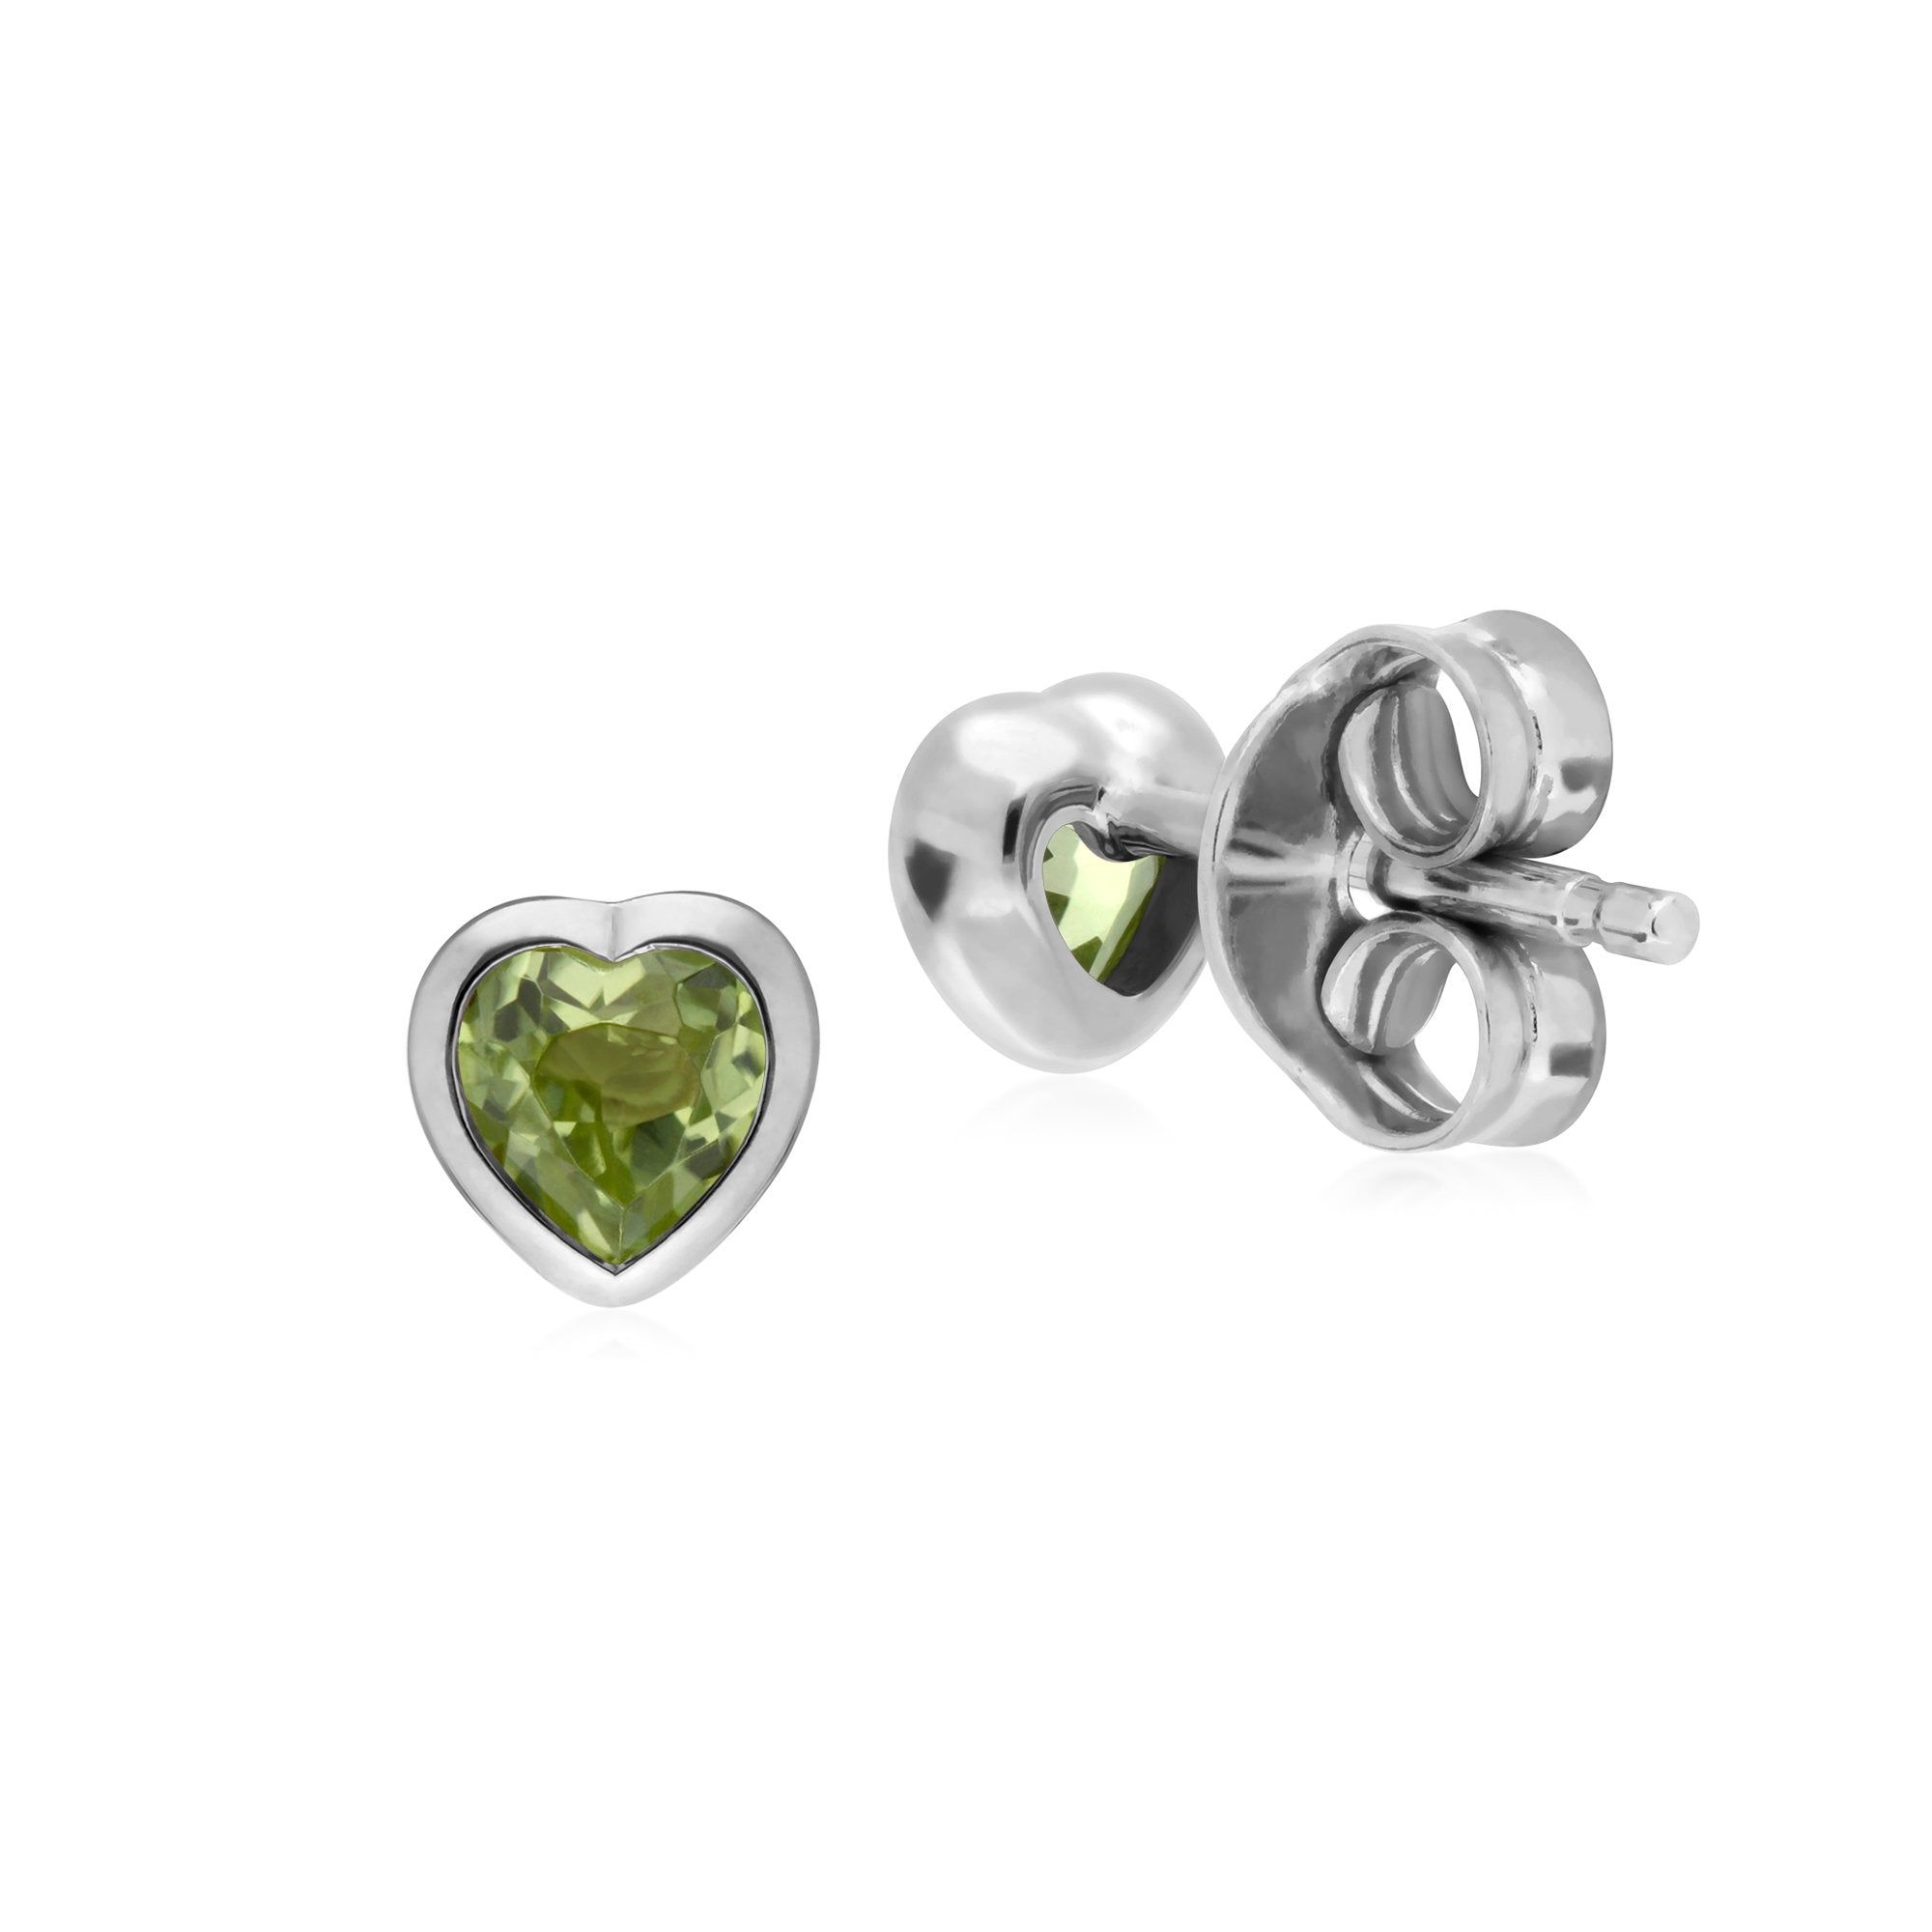 Essential Heart Shaped Peridot Stud Earrings in 925 Sterling Silver 4.5mm